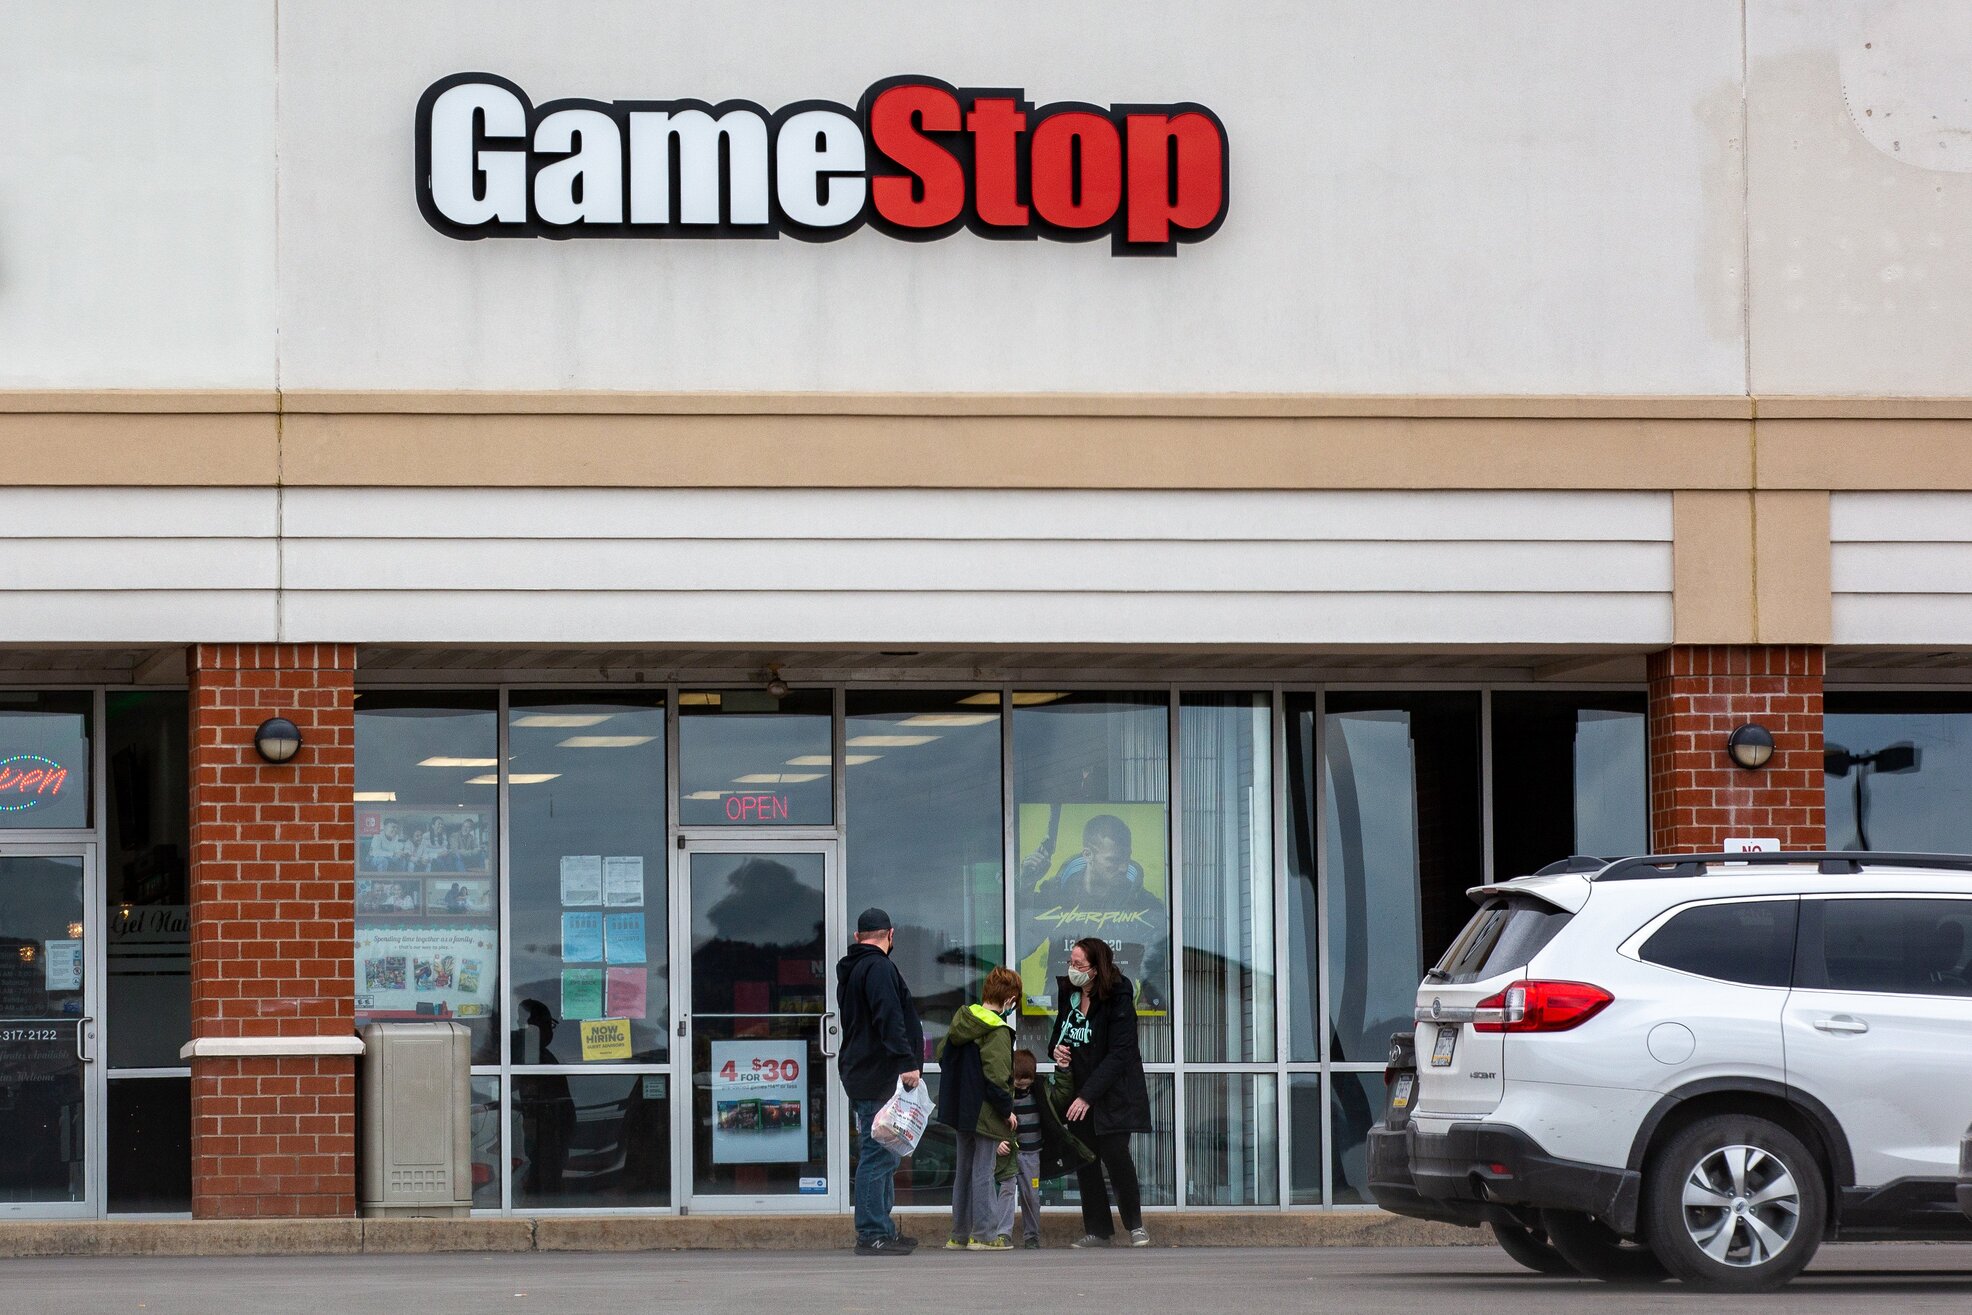 PS5 restock: GameStop has new stock this weekend